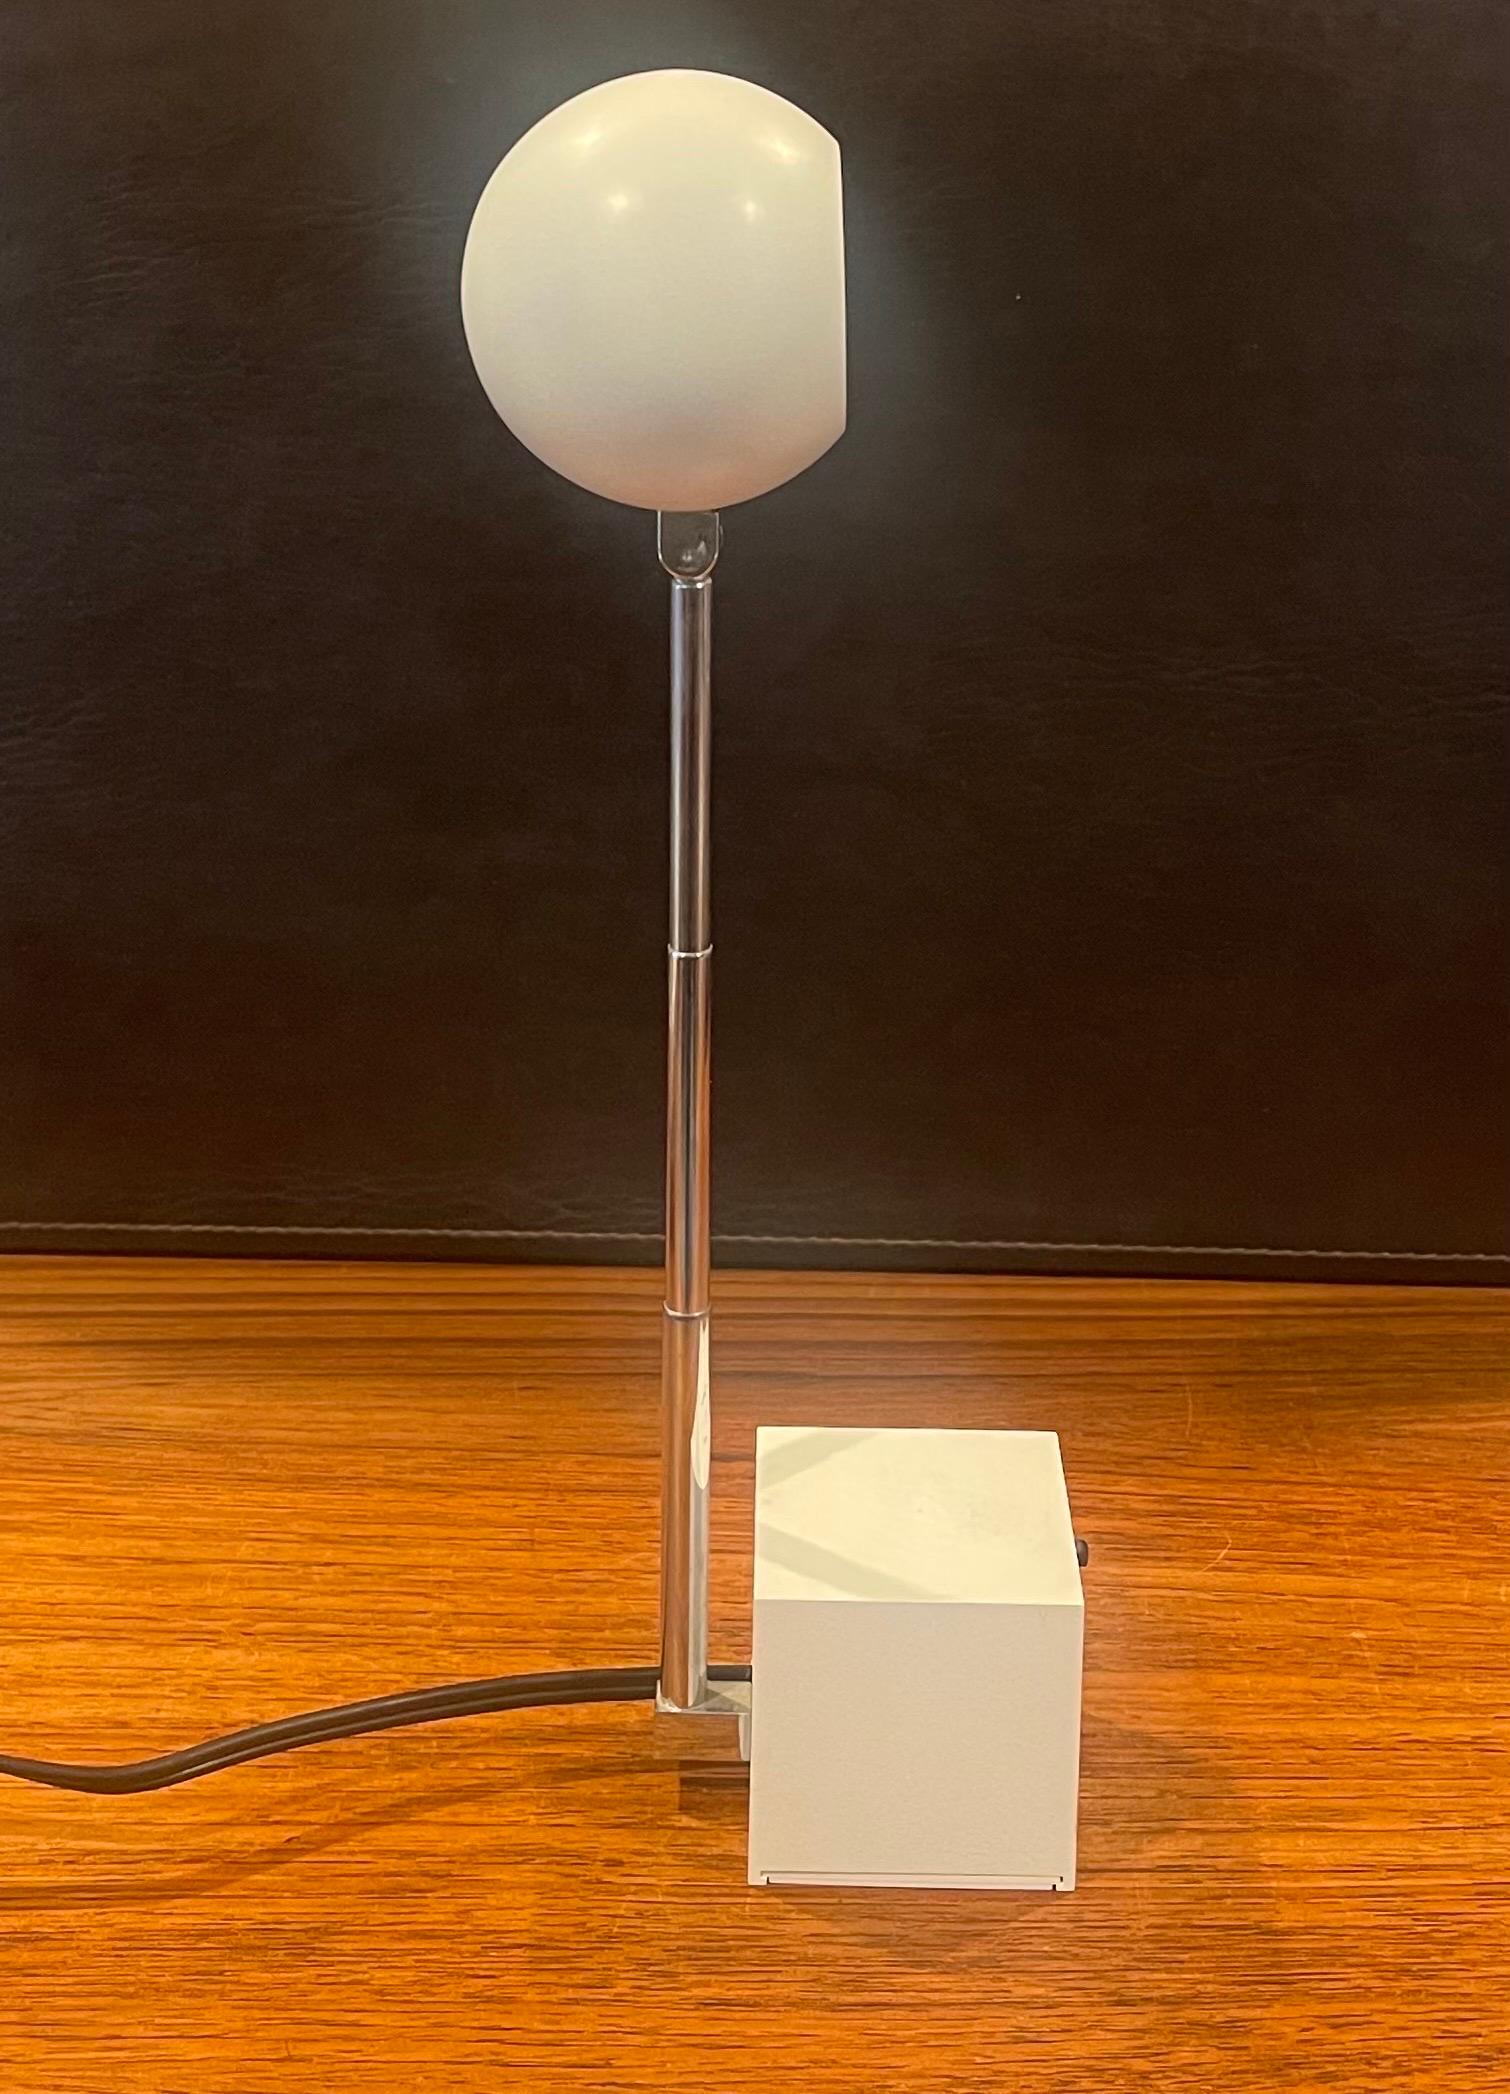 Zinc Lytegem Spherical Desk Lamp by Michael Lax for Lightoiler For Sale